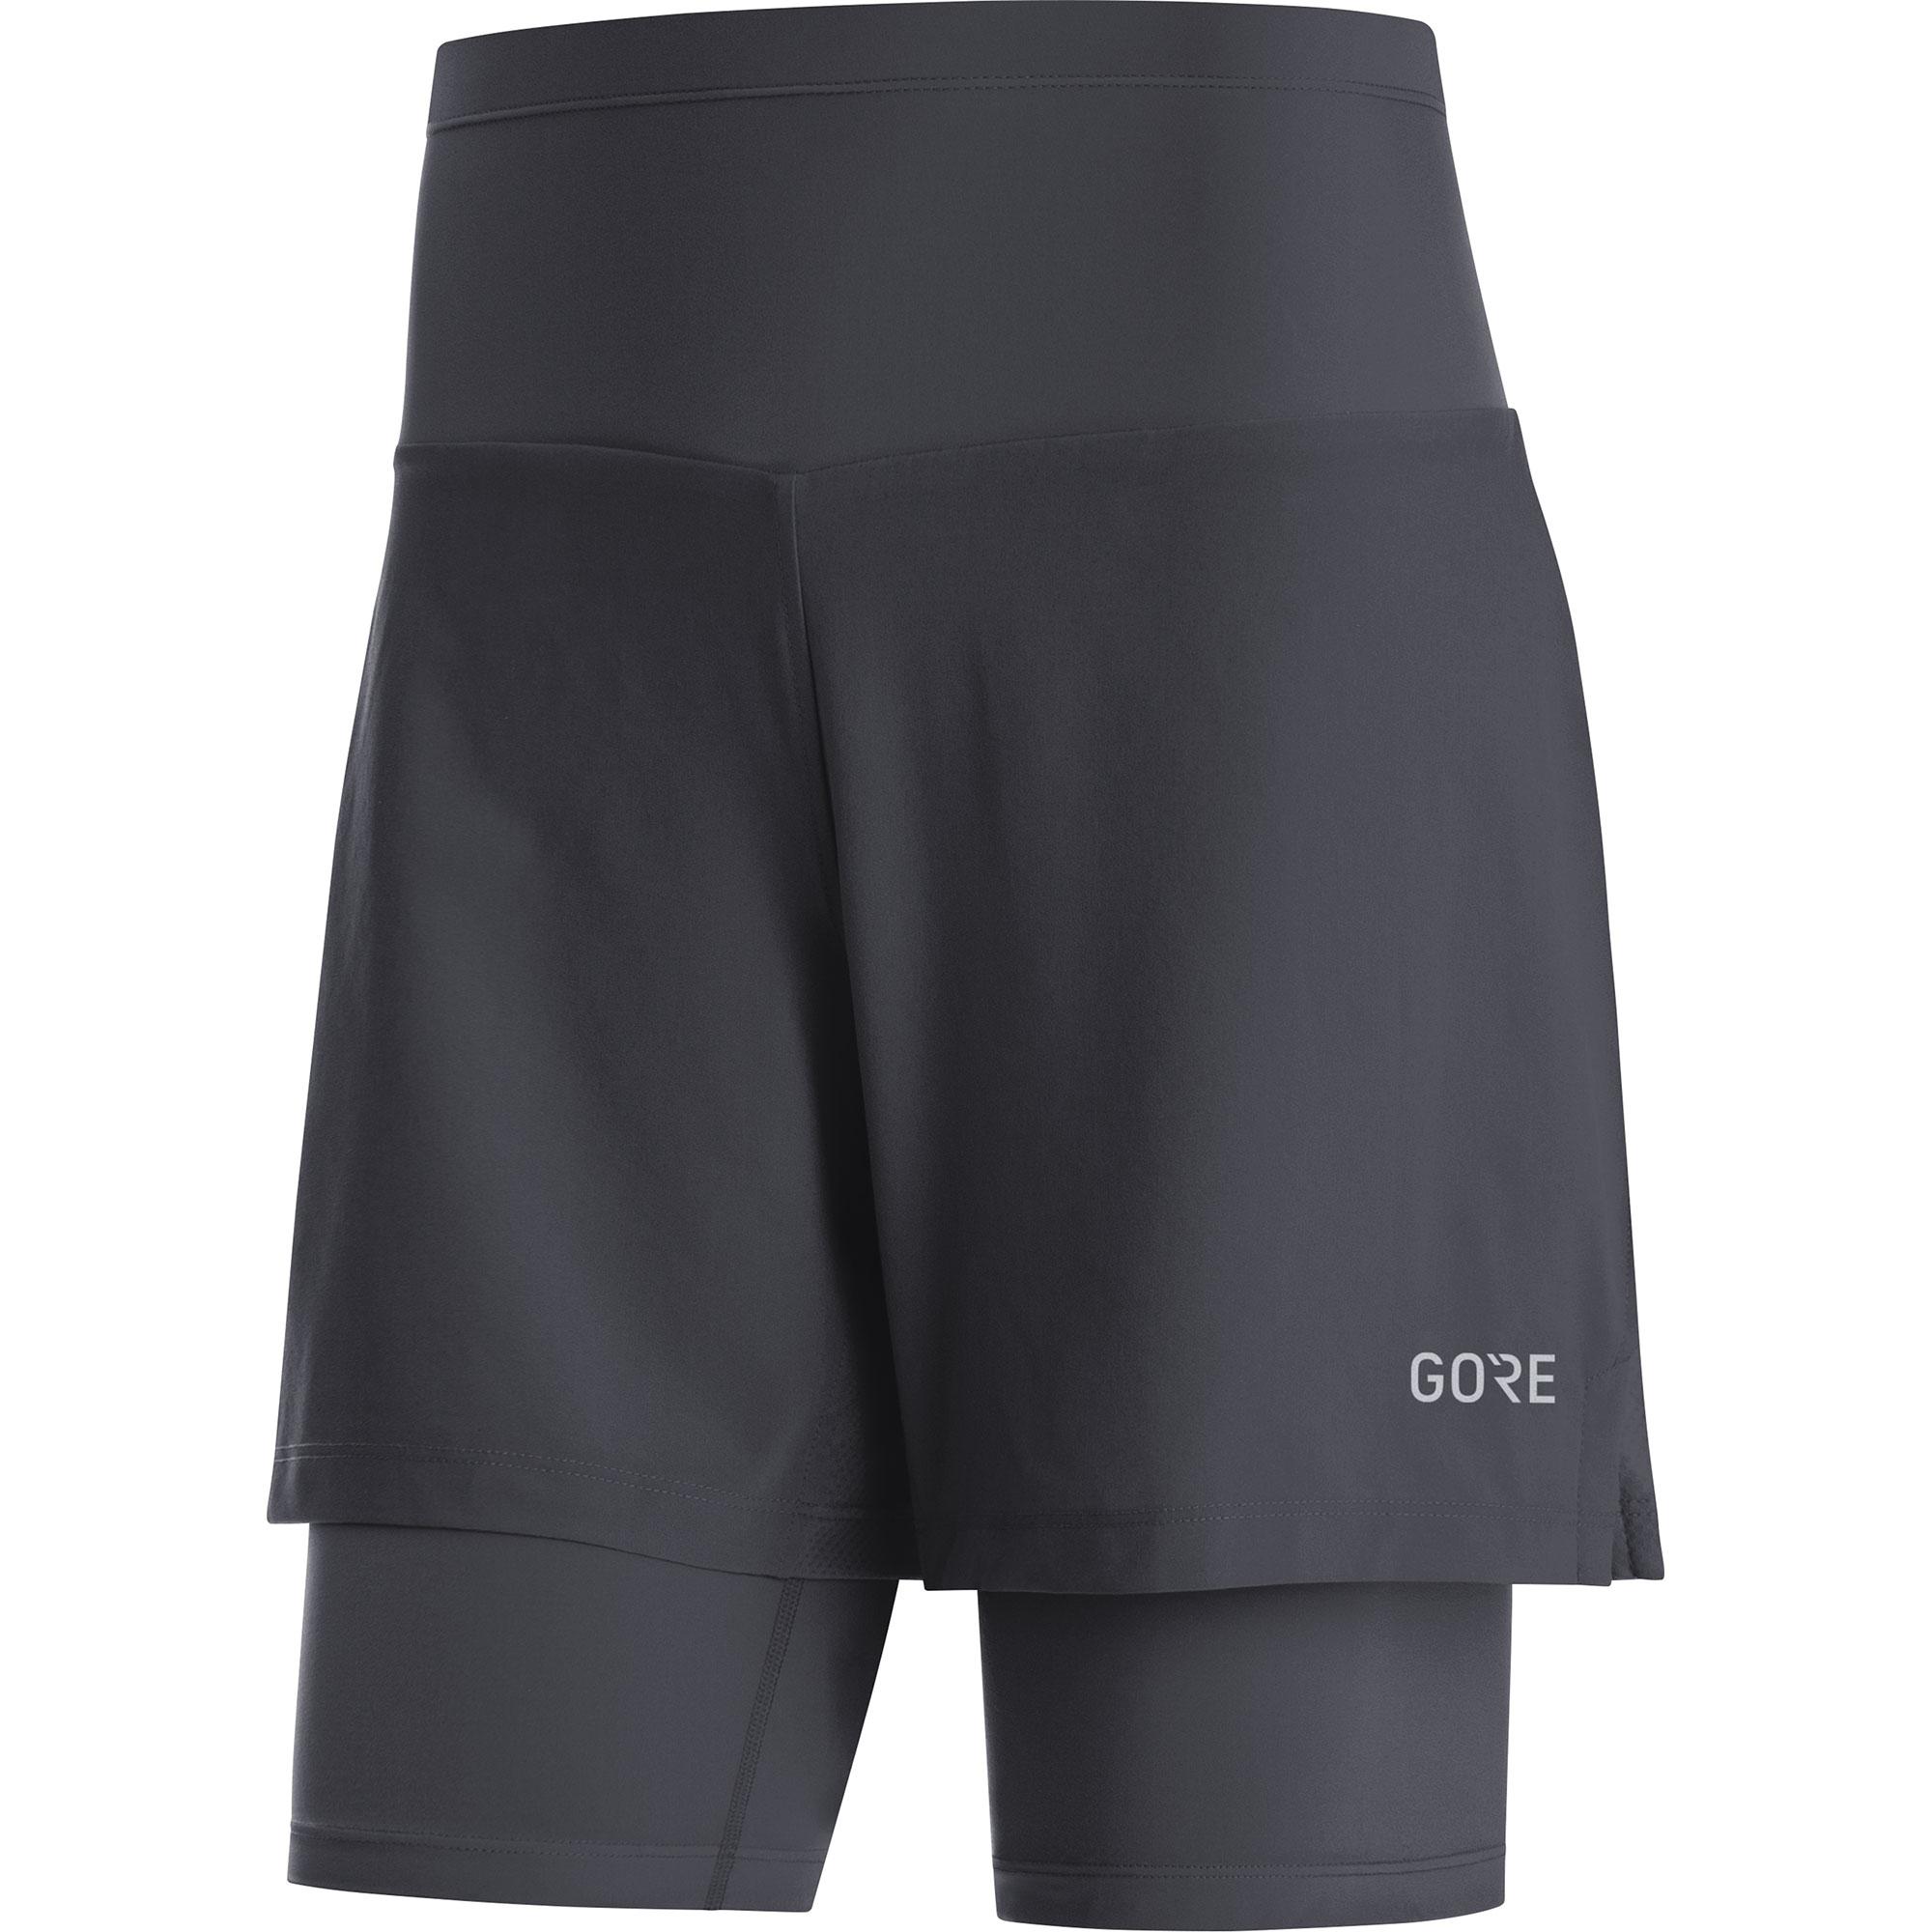 Gorewear Womens R5 2in1 Running Shorts - Black